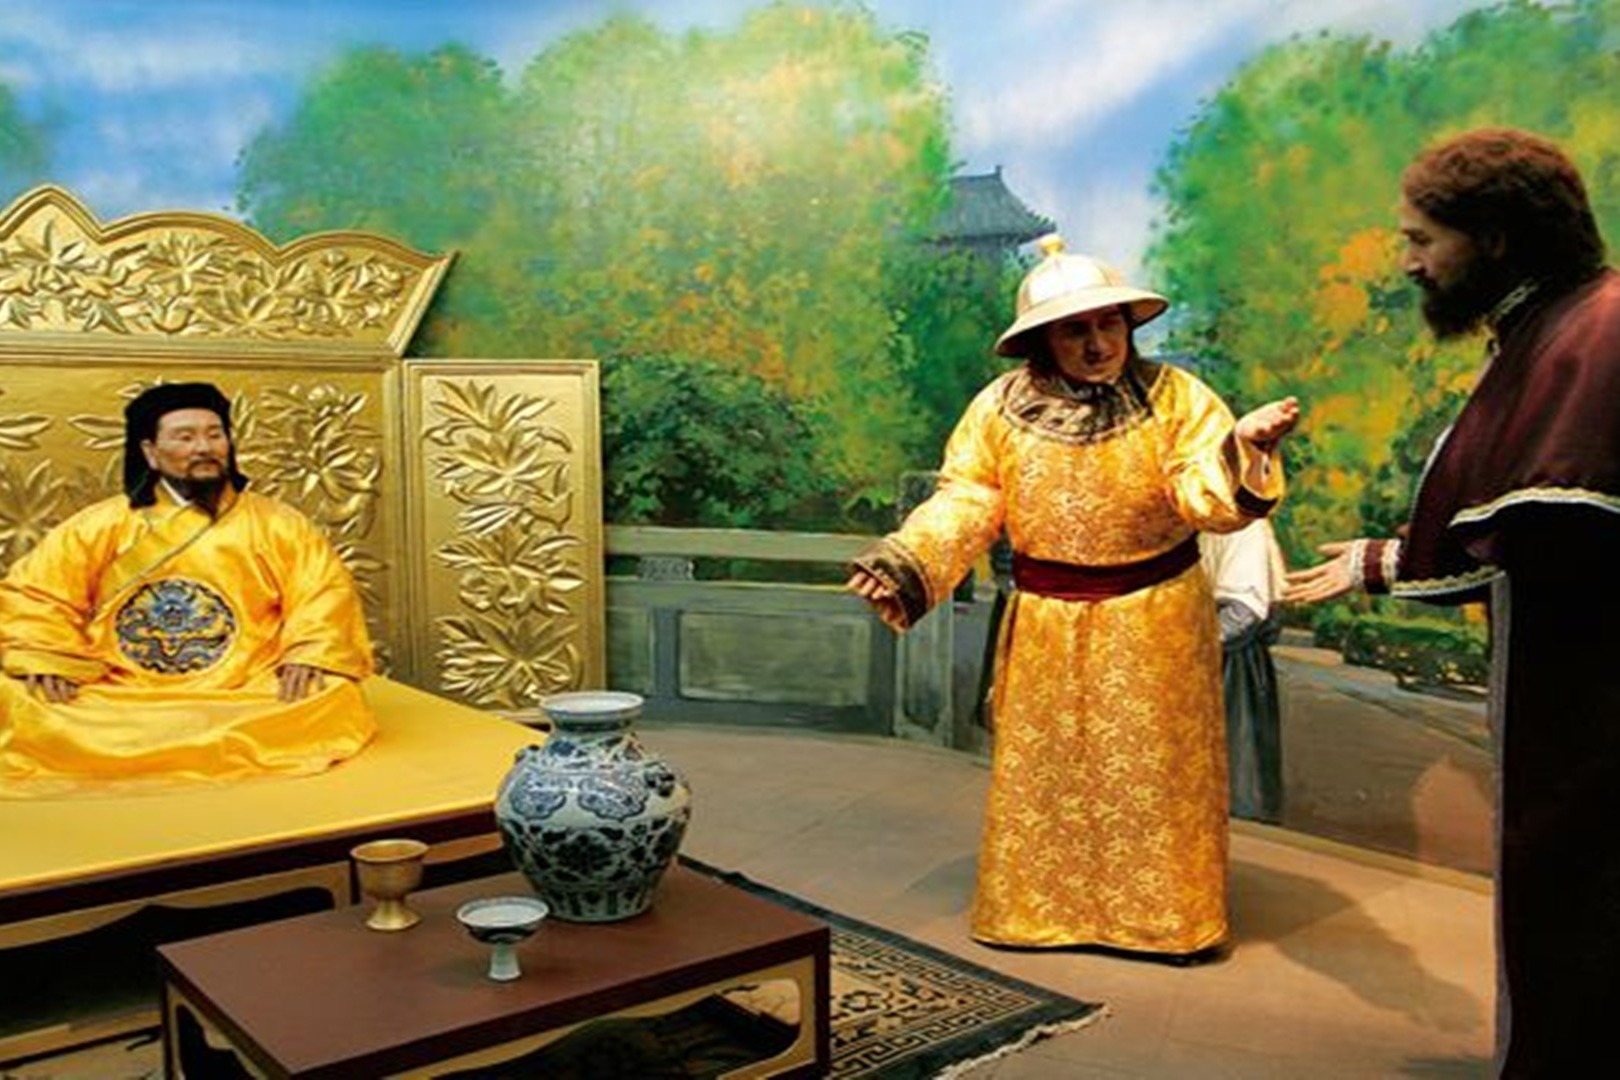 元朝时期最受器重的"汉官家族",连元朝皇帝都会礼让三分叫大哥